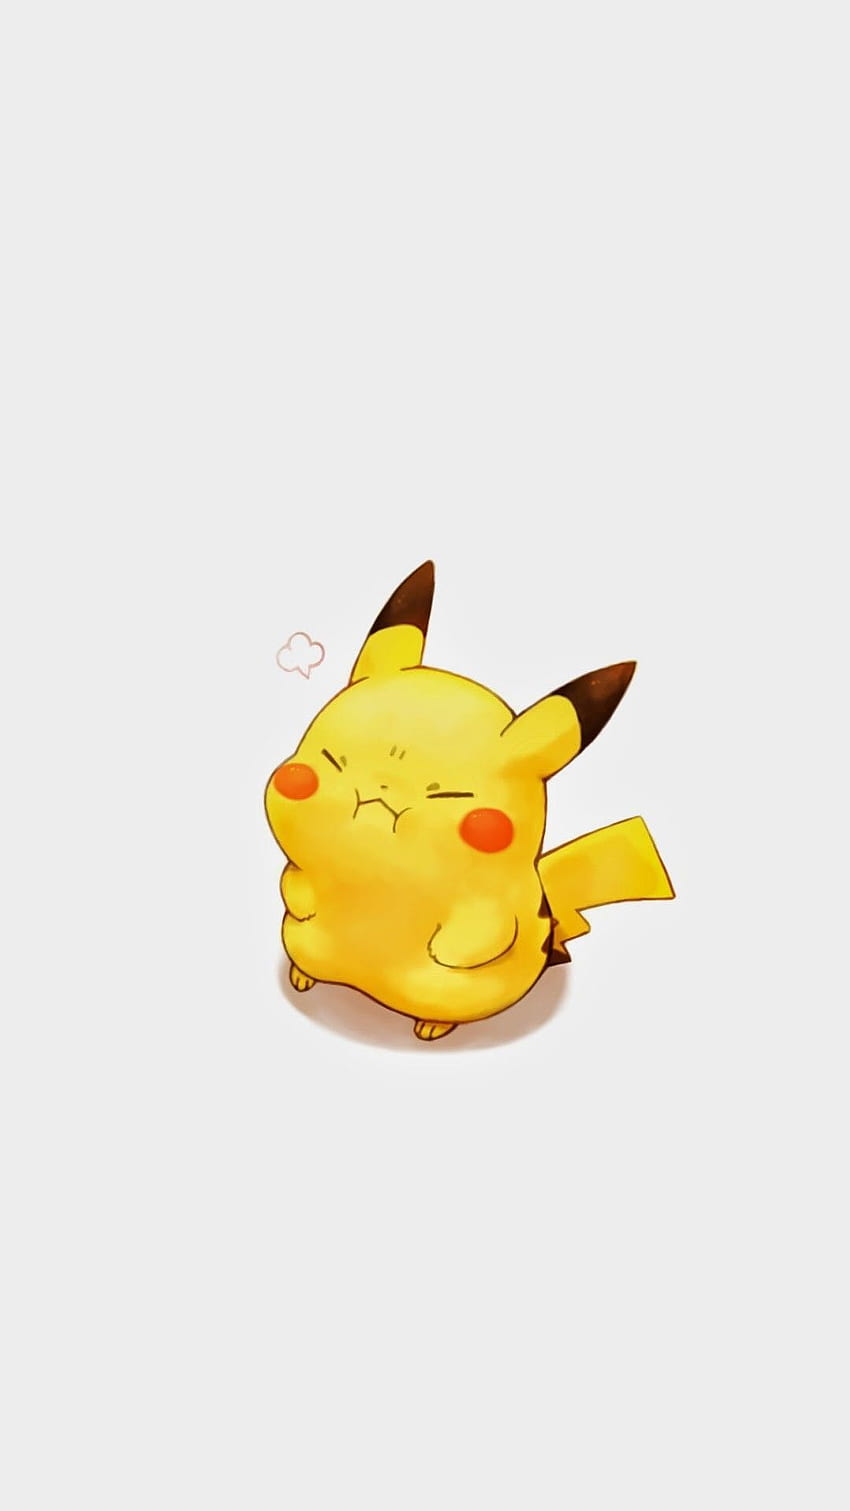 Pikachu cute chibi HD wallpapers | Pxfuel